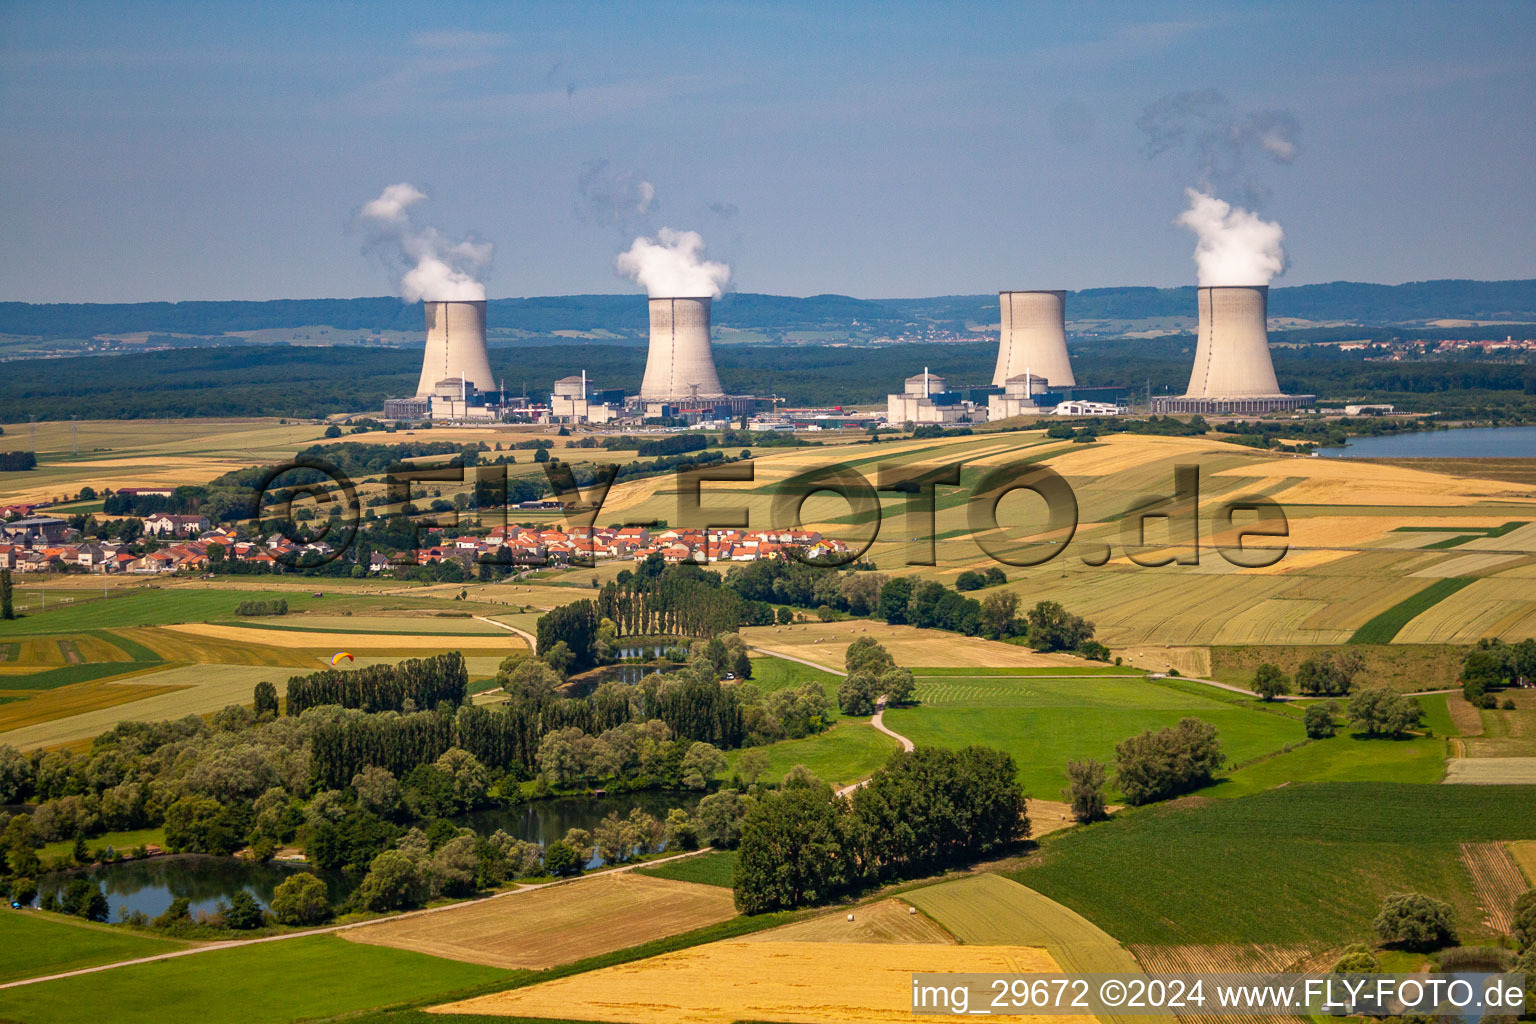 Reaktorblöcke, Kühlturmbauwerke und Anlagen des EDF AKW - KKW Atomkraftwerk - Kernkraftwerk in Cattenom in Alsace-Champagne-Ardenne-Lorraine im Bundesland Moselle, Frankreich